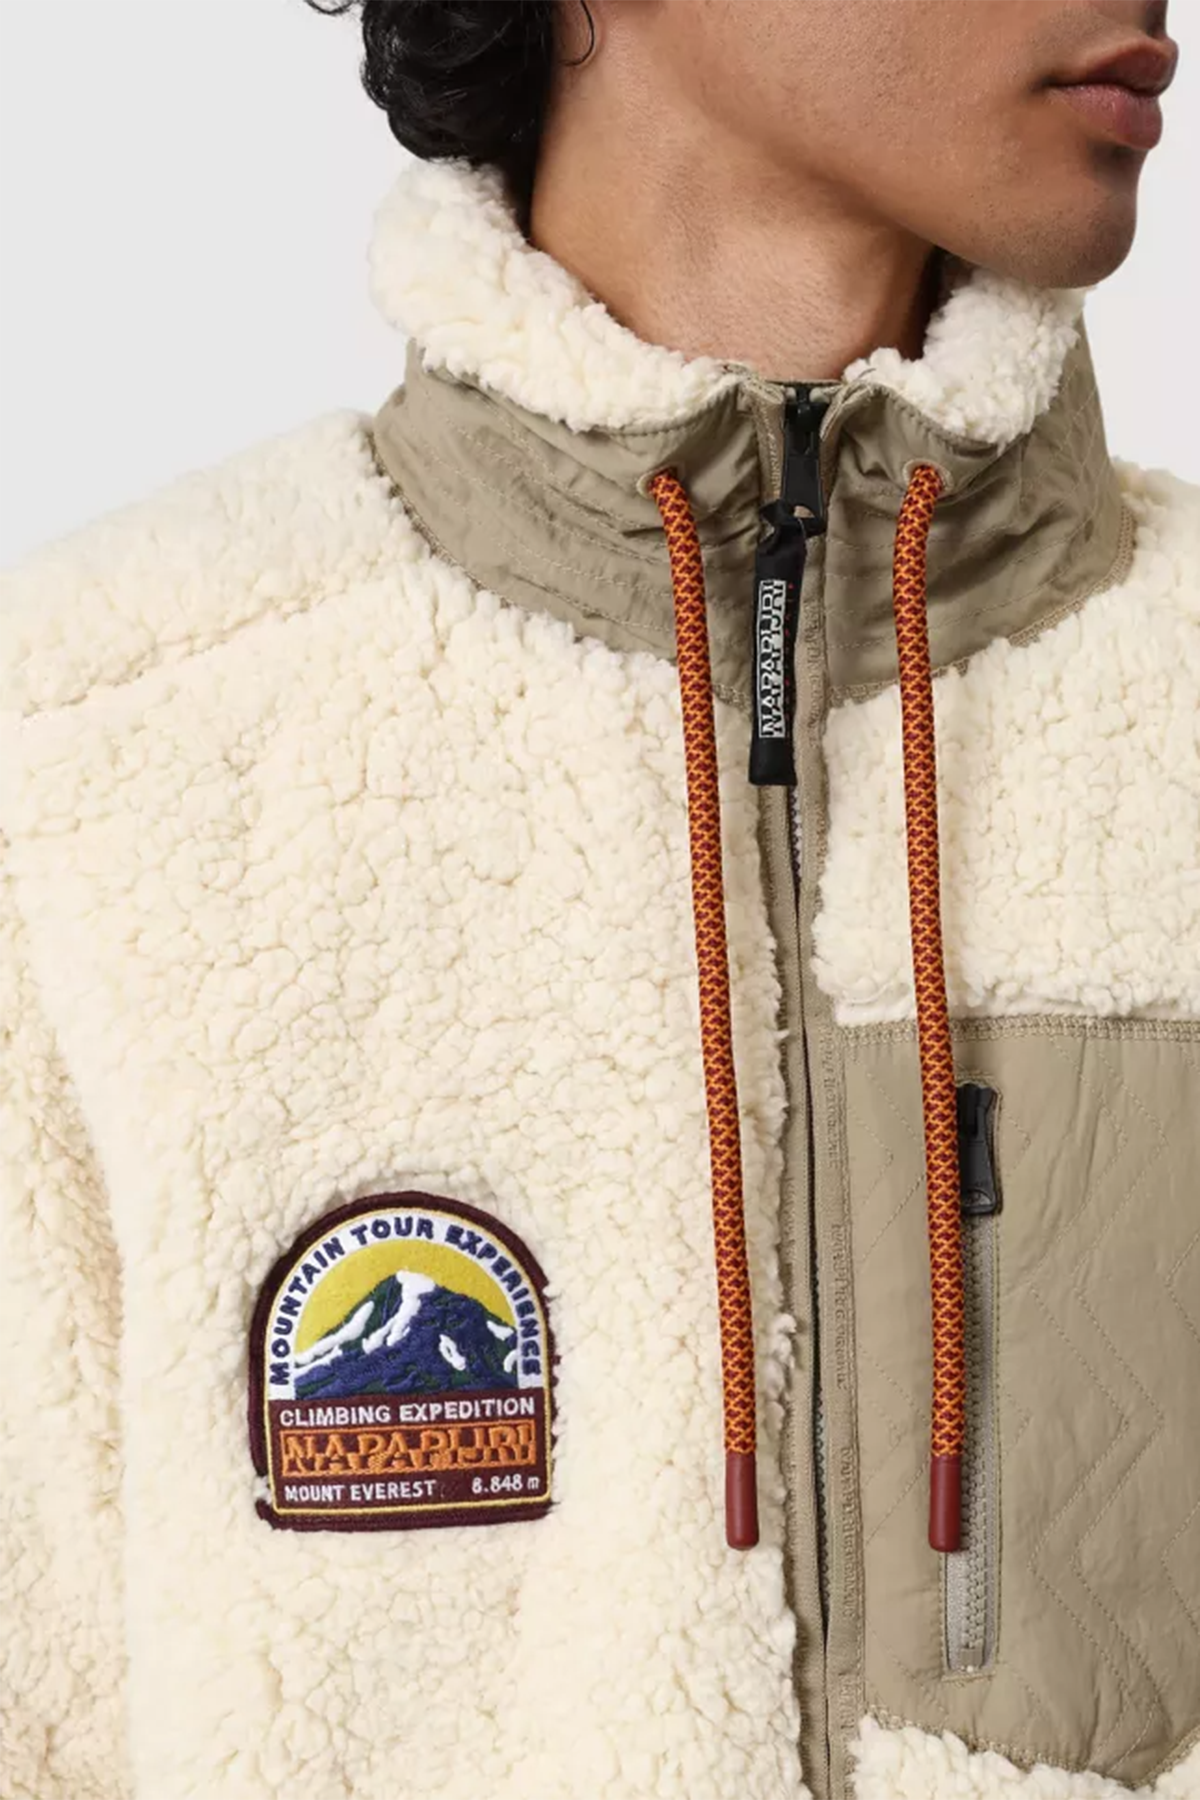 Napapijri Polar Sweatshirt Ceket-Libas Trendy Fashion Store